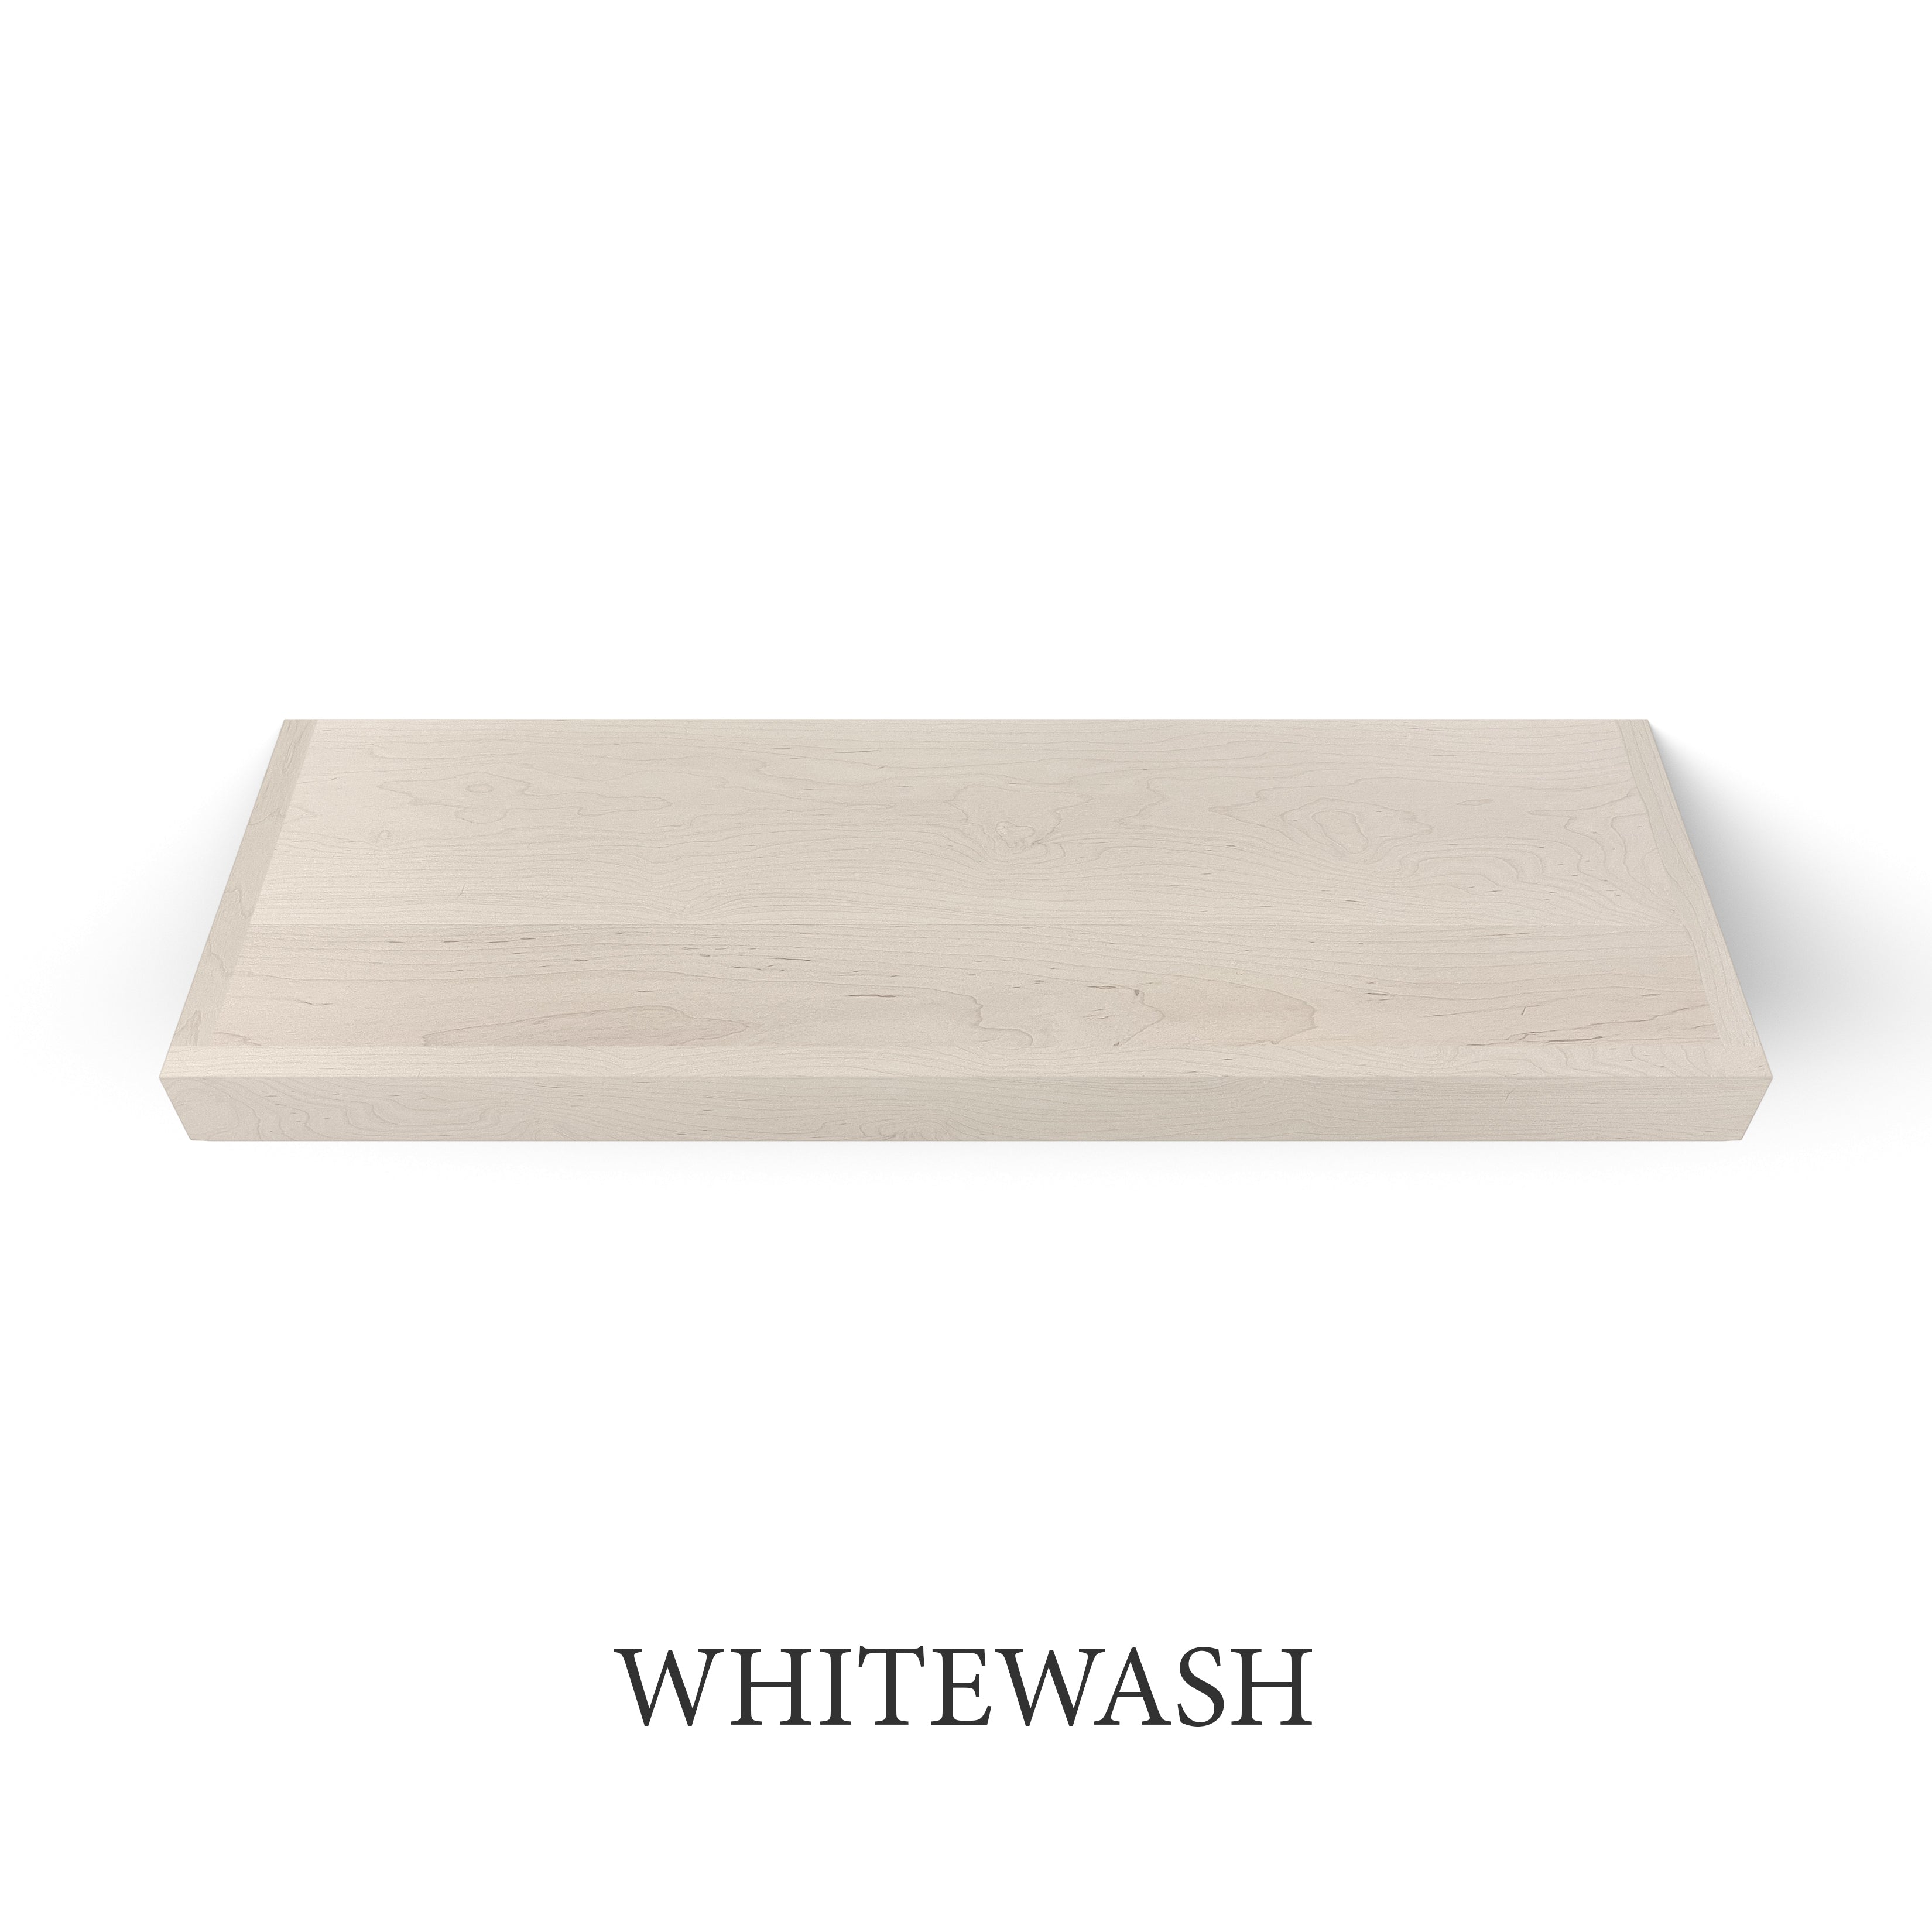 whitewash Maple 2 Inch LED Lighted Floating Shelf - Battery